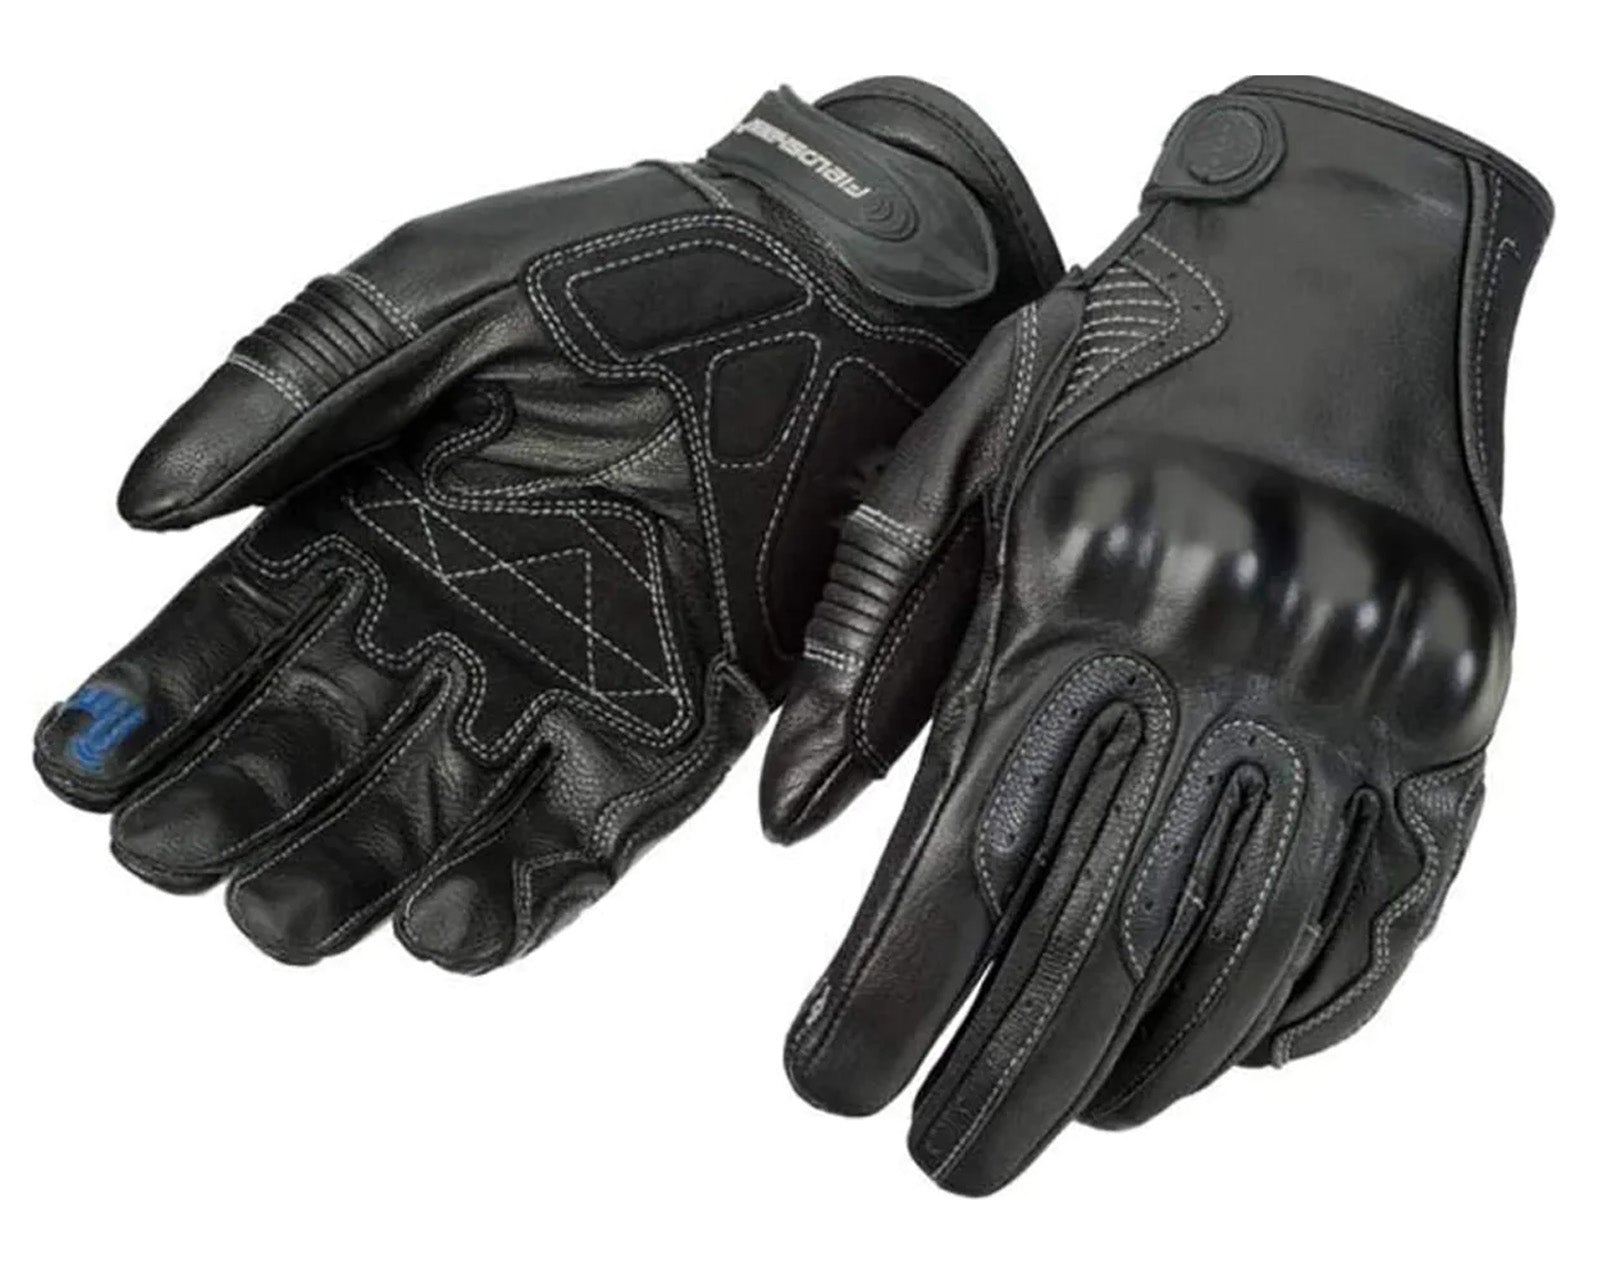 
Fieldsheer Soul Ride Men's Street Gloves 